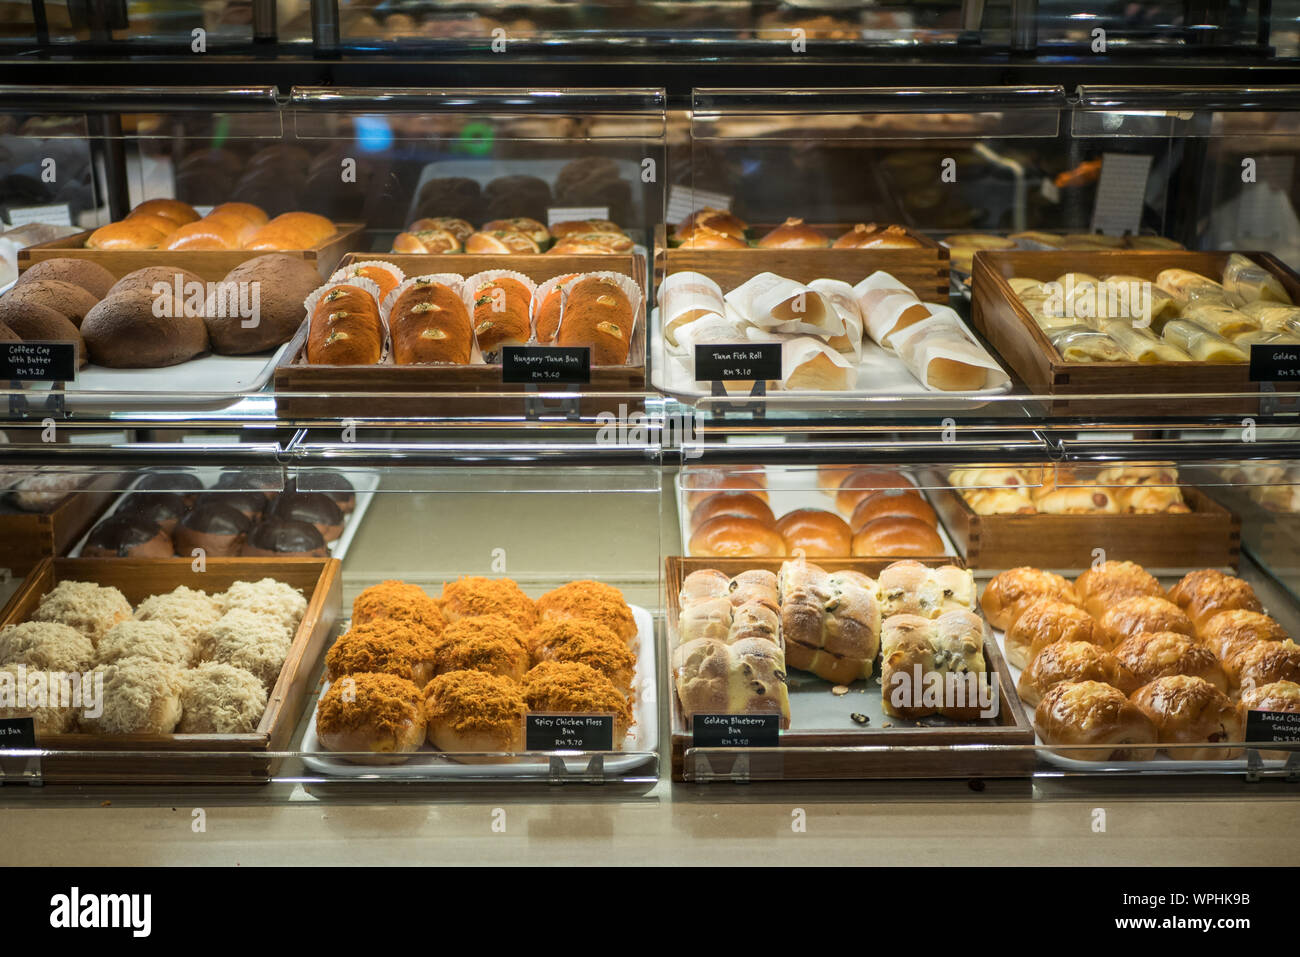 Visualización De Deliciosos Pasteles En Una Panadería Con Donuts Azucarados  , Galletas Y Galletas En Bandejas En Un Mostrador De Tienda Fotos,  retratos, imágenes y fotografía de archivo libres de derecho. Image